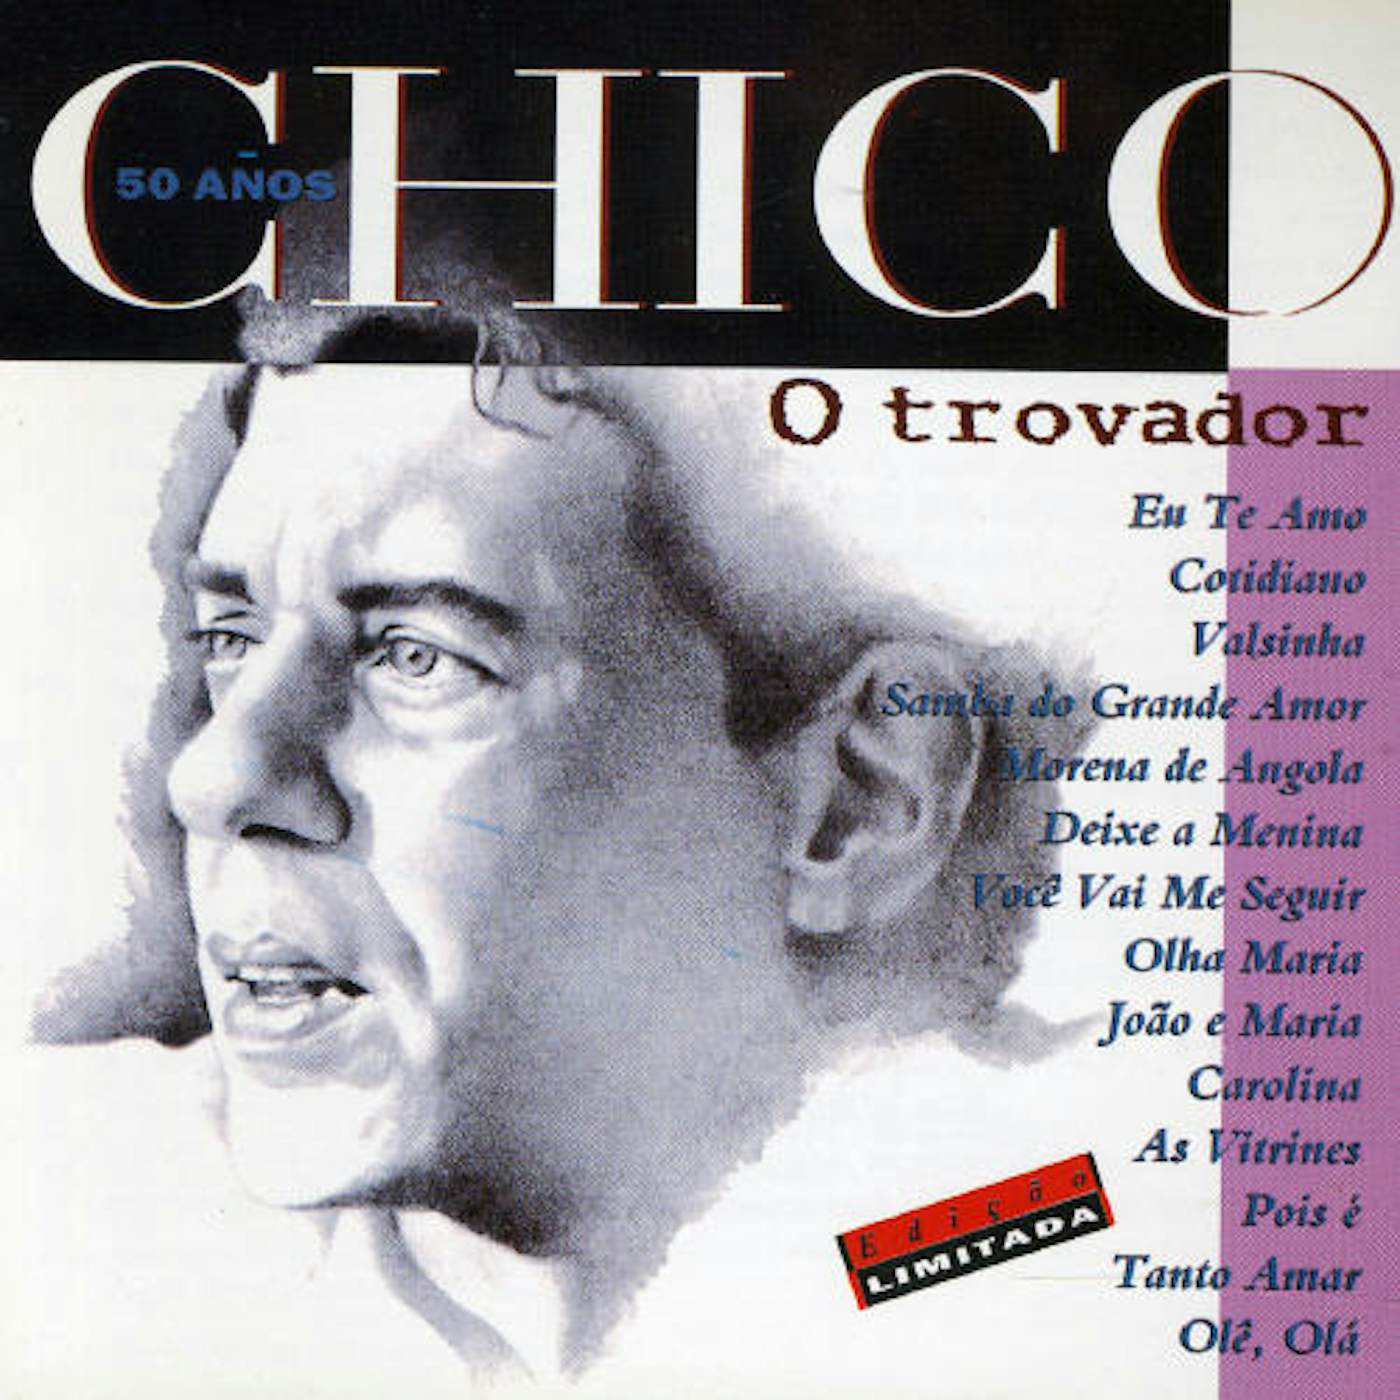 Chico Buarque O TROVADOR - 50 ADOS CD